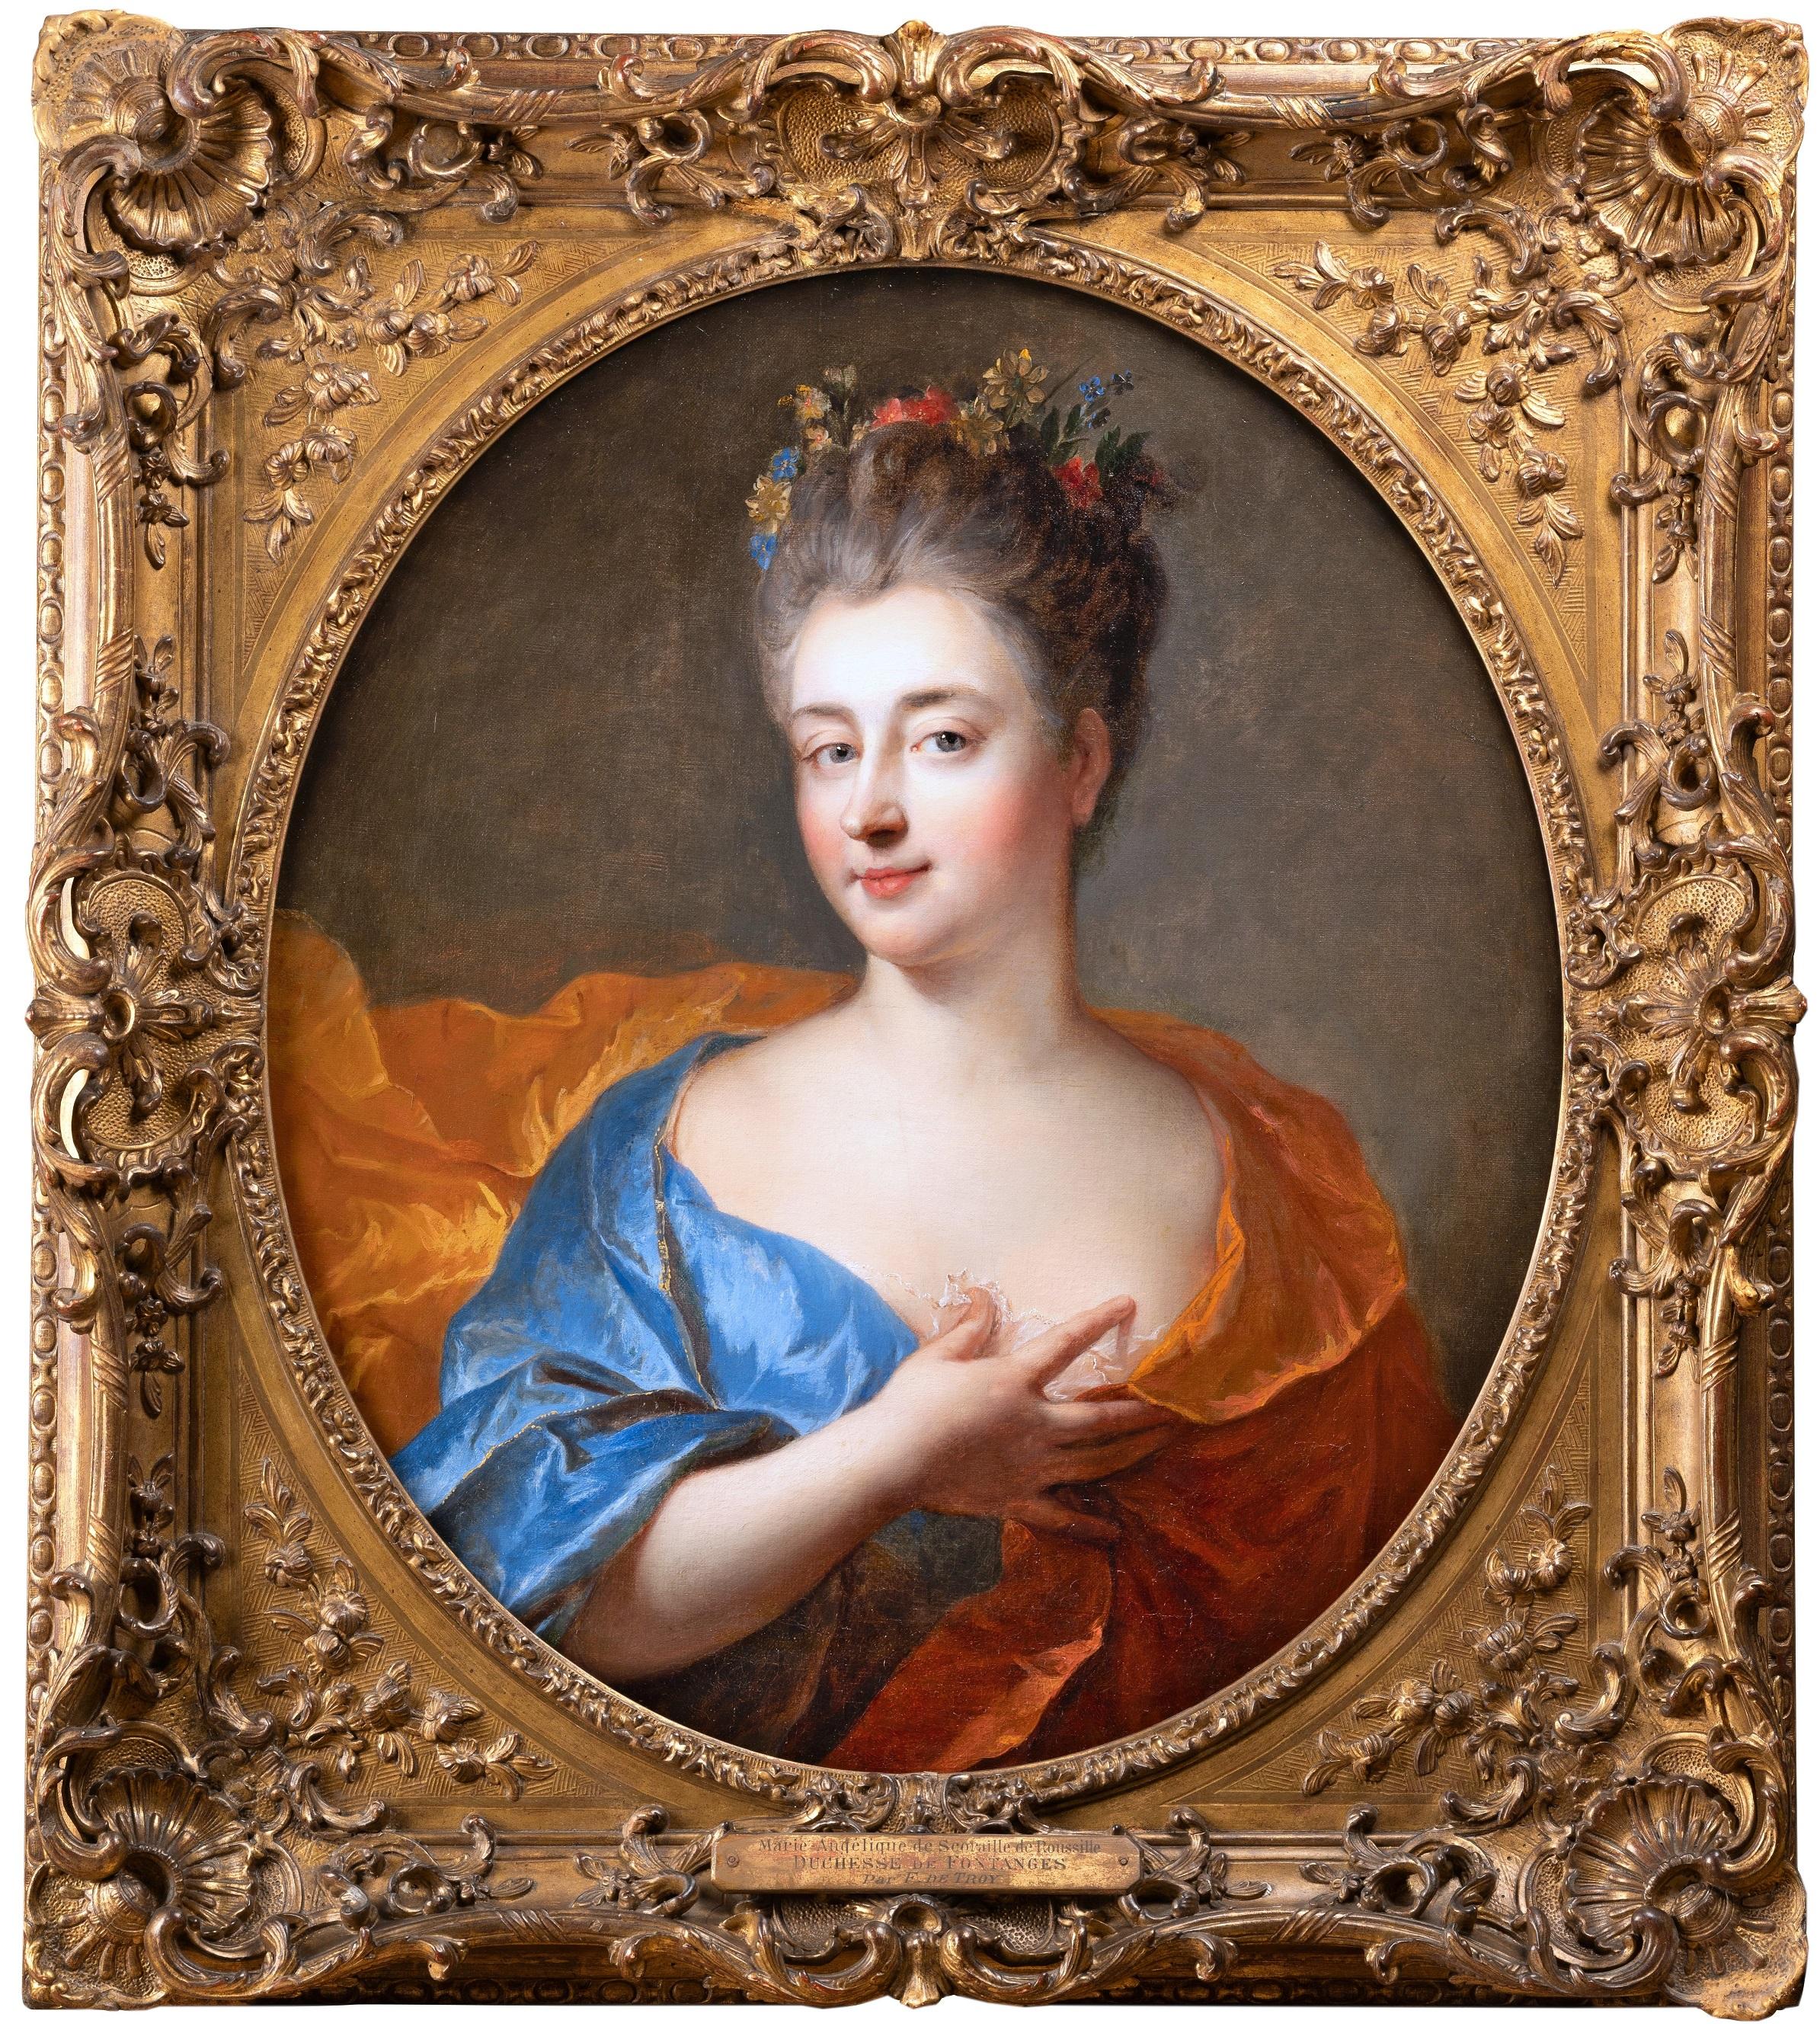 François de Troy (Toulouse 1645 - Paris 1730) Portrait Painting - 18th century French - Portrait of Duchesse de Fontanges by François de Troy